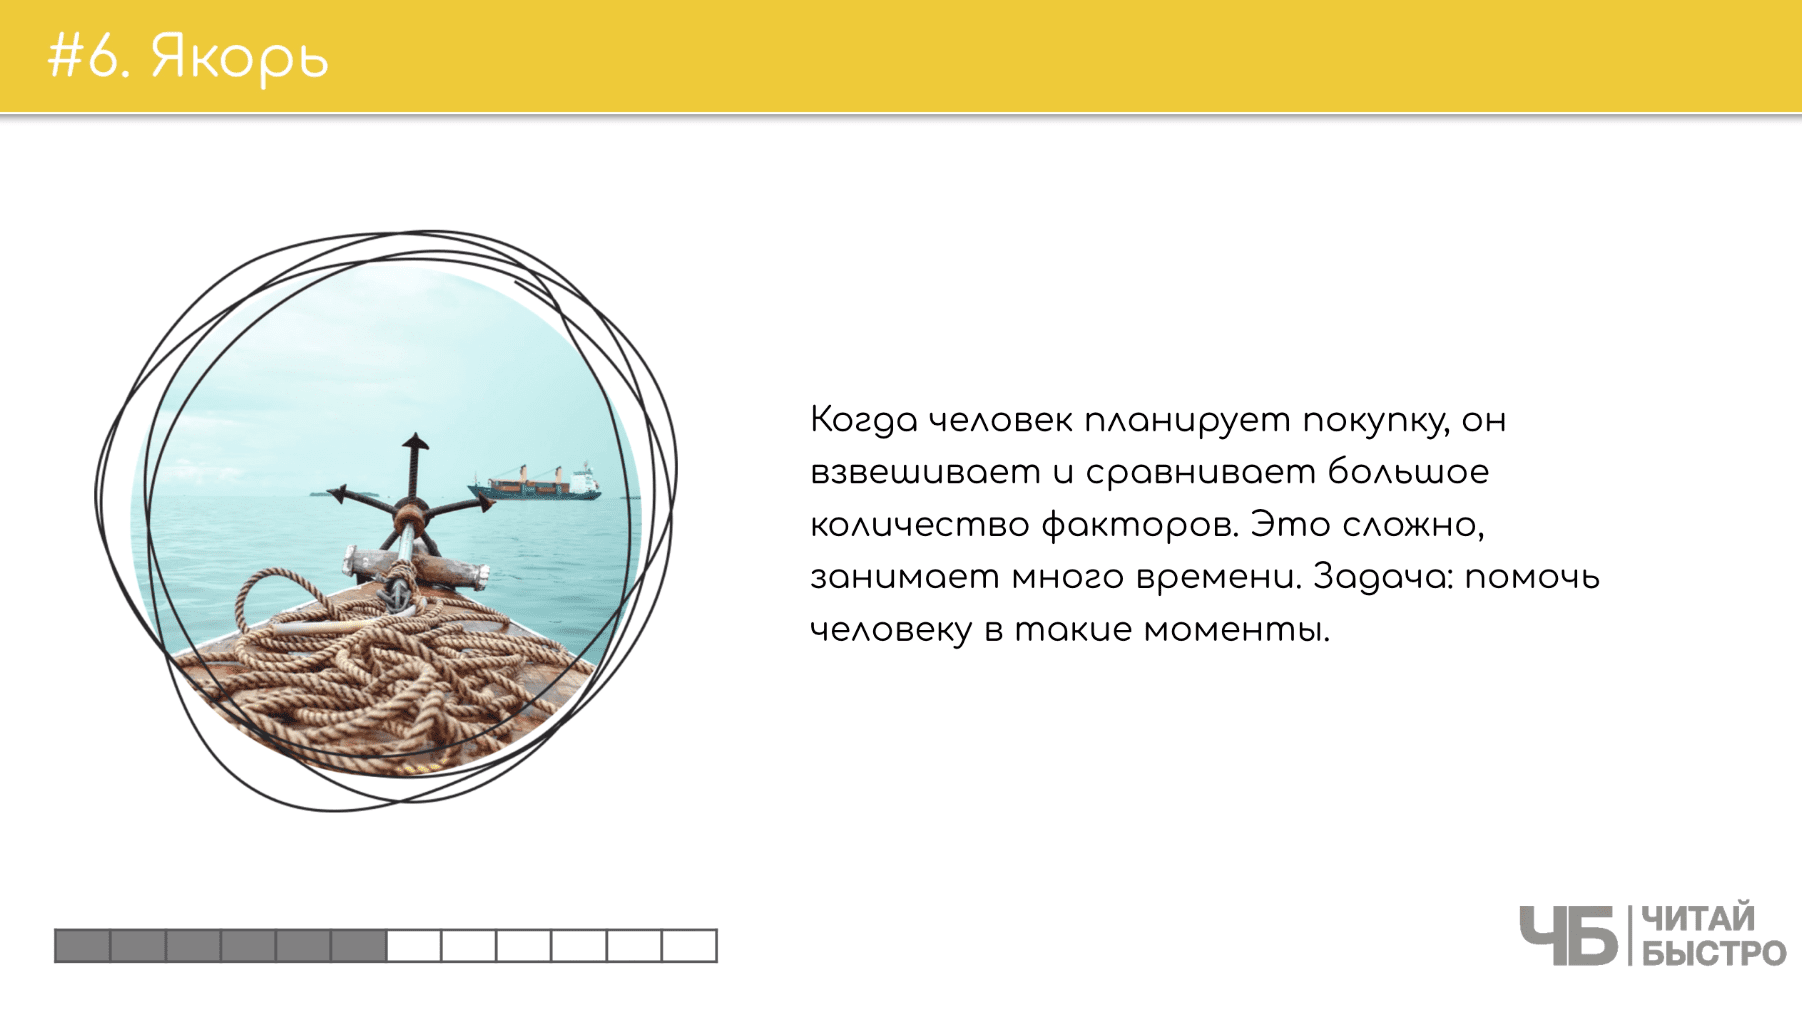 На этом слайде изображен тезис о якоре и иллюстрация якоря на корабле.